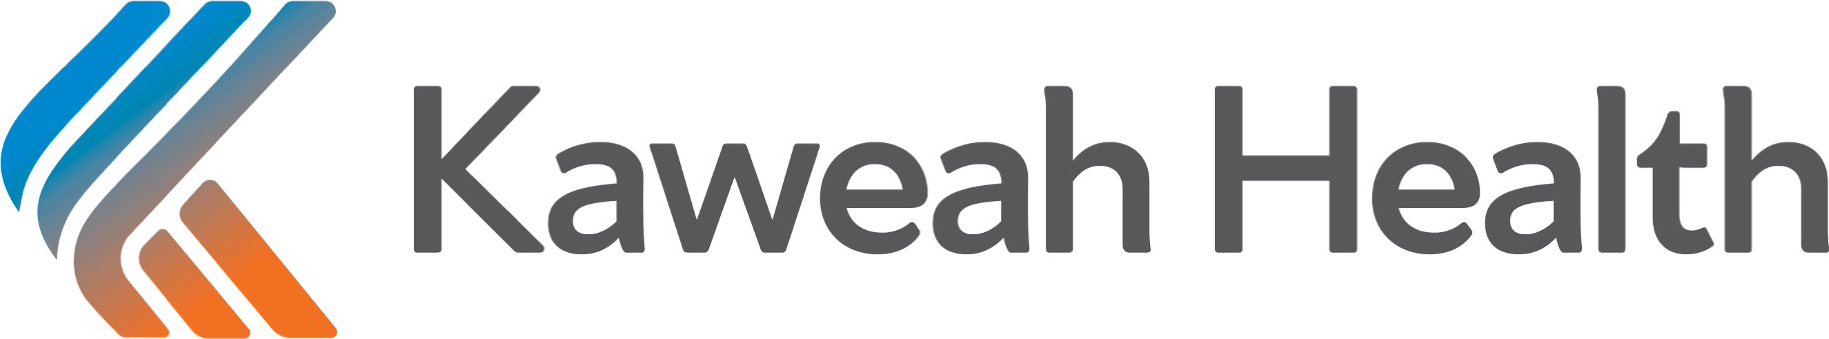 Kaweah Health Logo